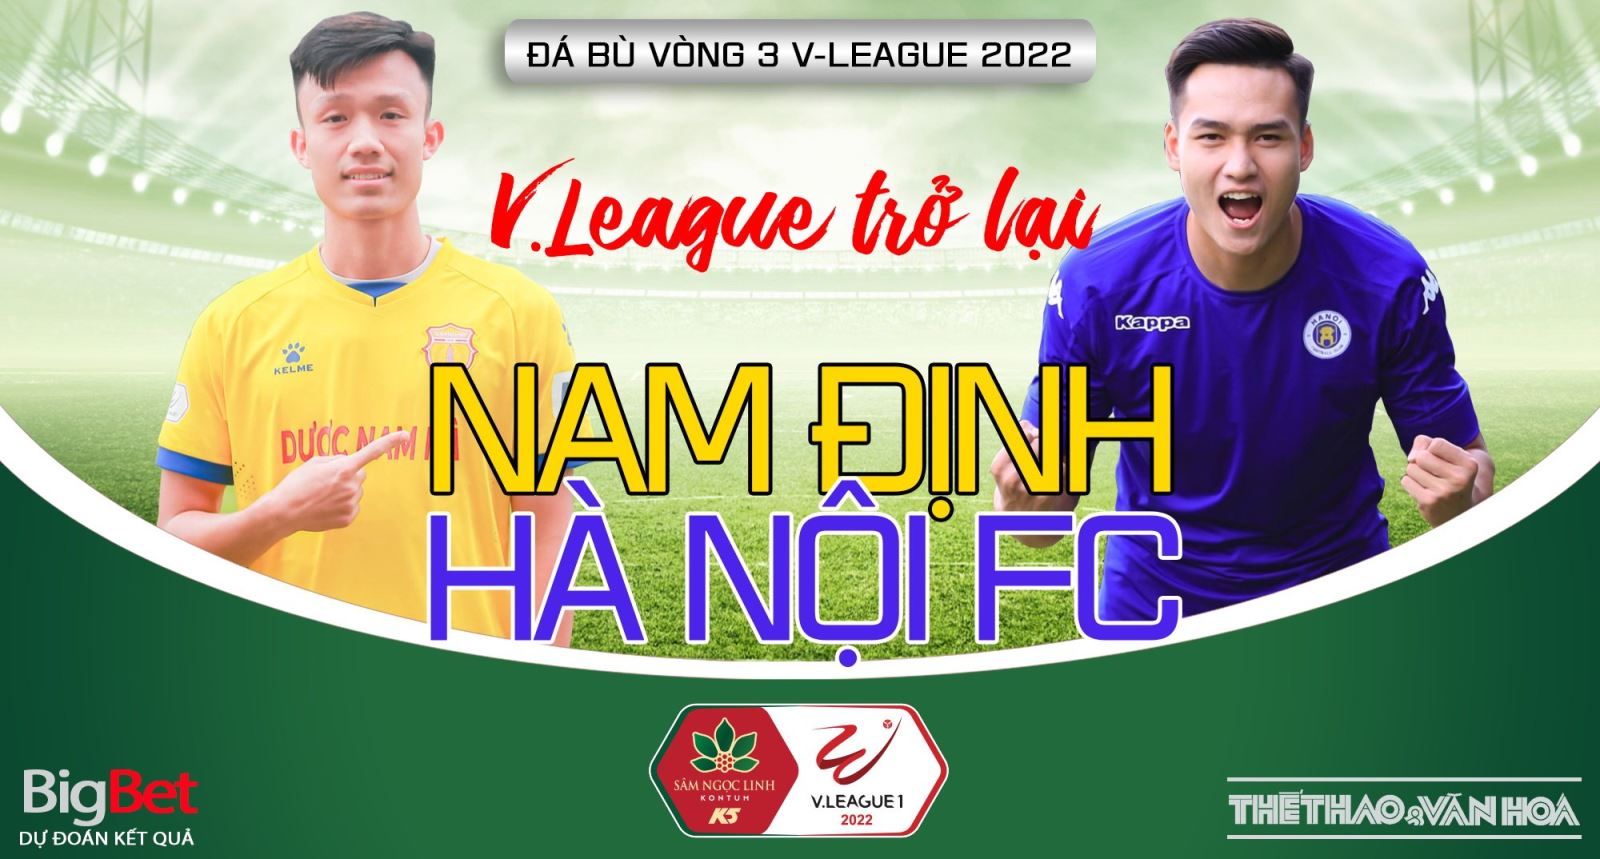 Nhận định bóng đá nhà cái Nam Định vs Hà Nội FC. Nhận định, dự đoán bóng đá V-League 2022 (18h00, 26/6)